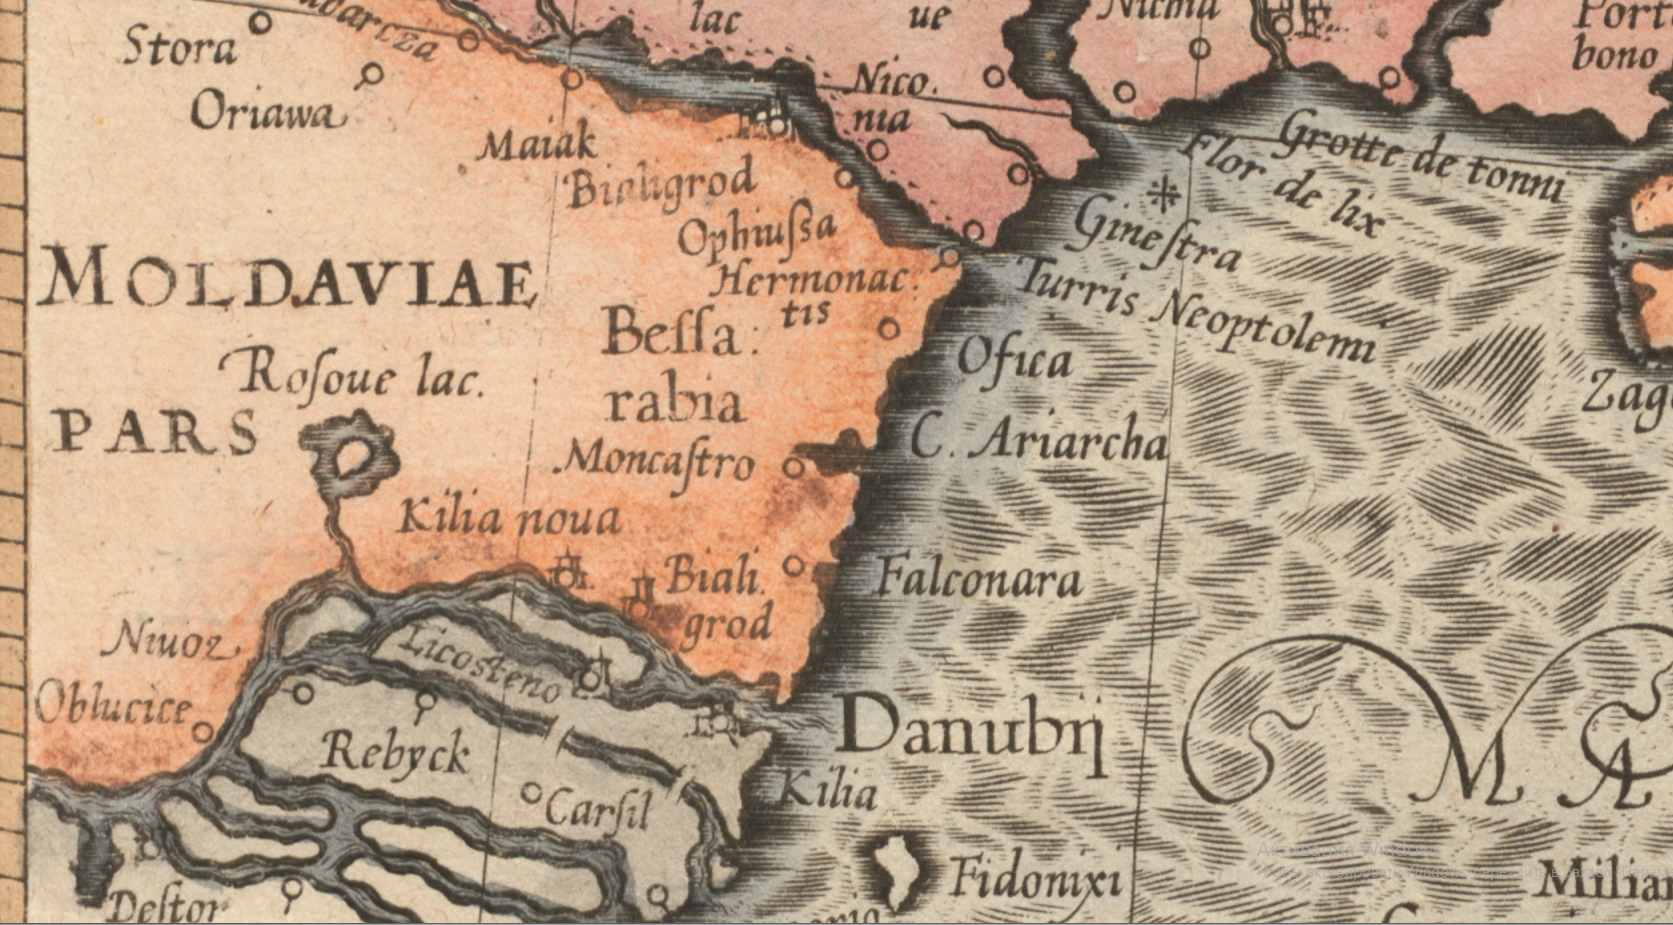 Фрагмент карты 1595 года, где изображена часть Молдавии, Бессарабия с городами в устье Дуная и на Днестре.